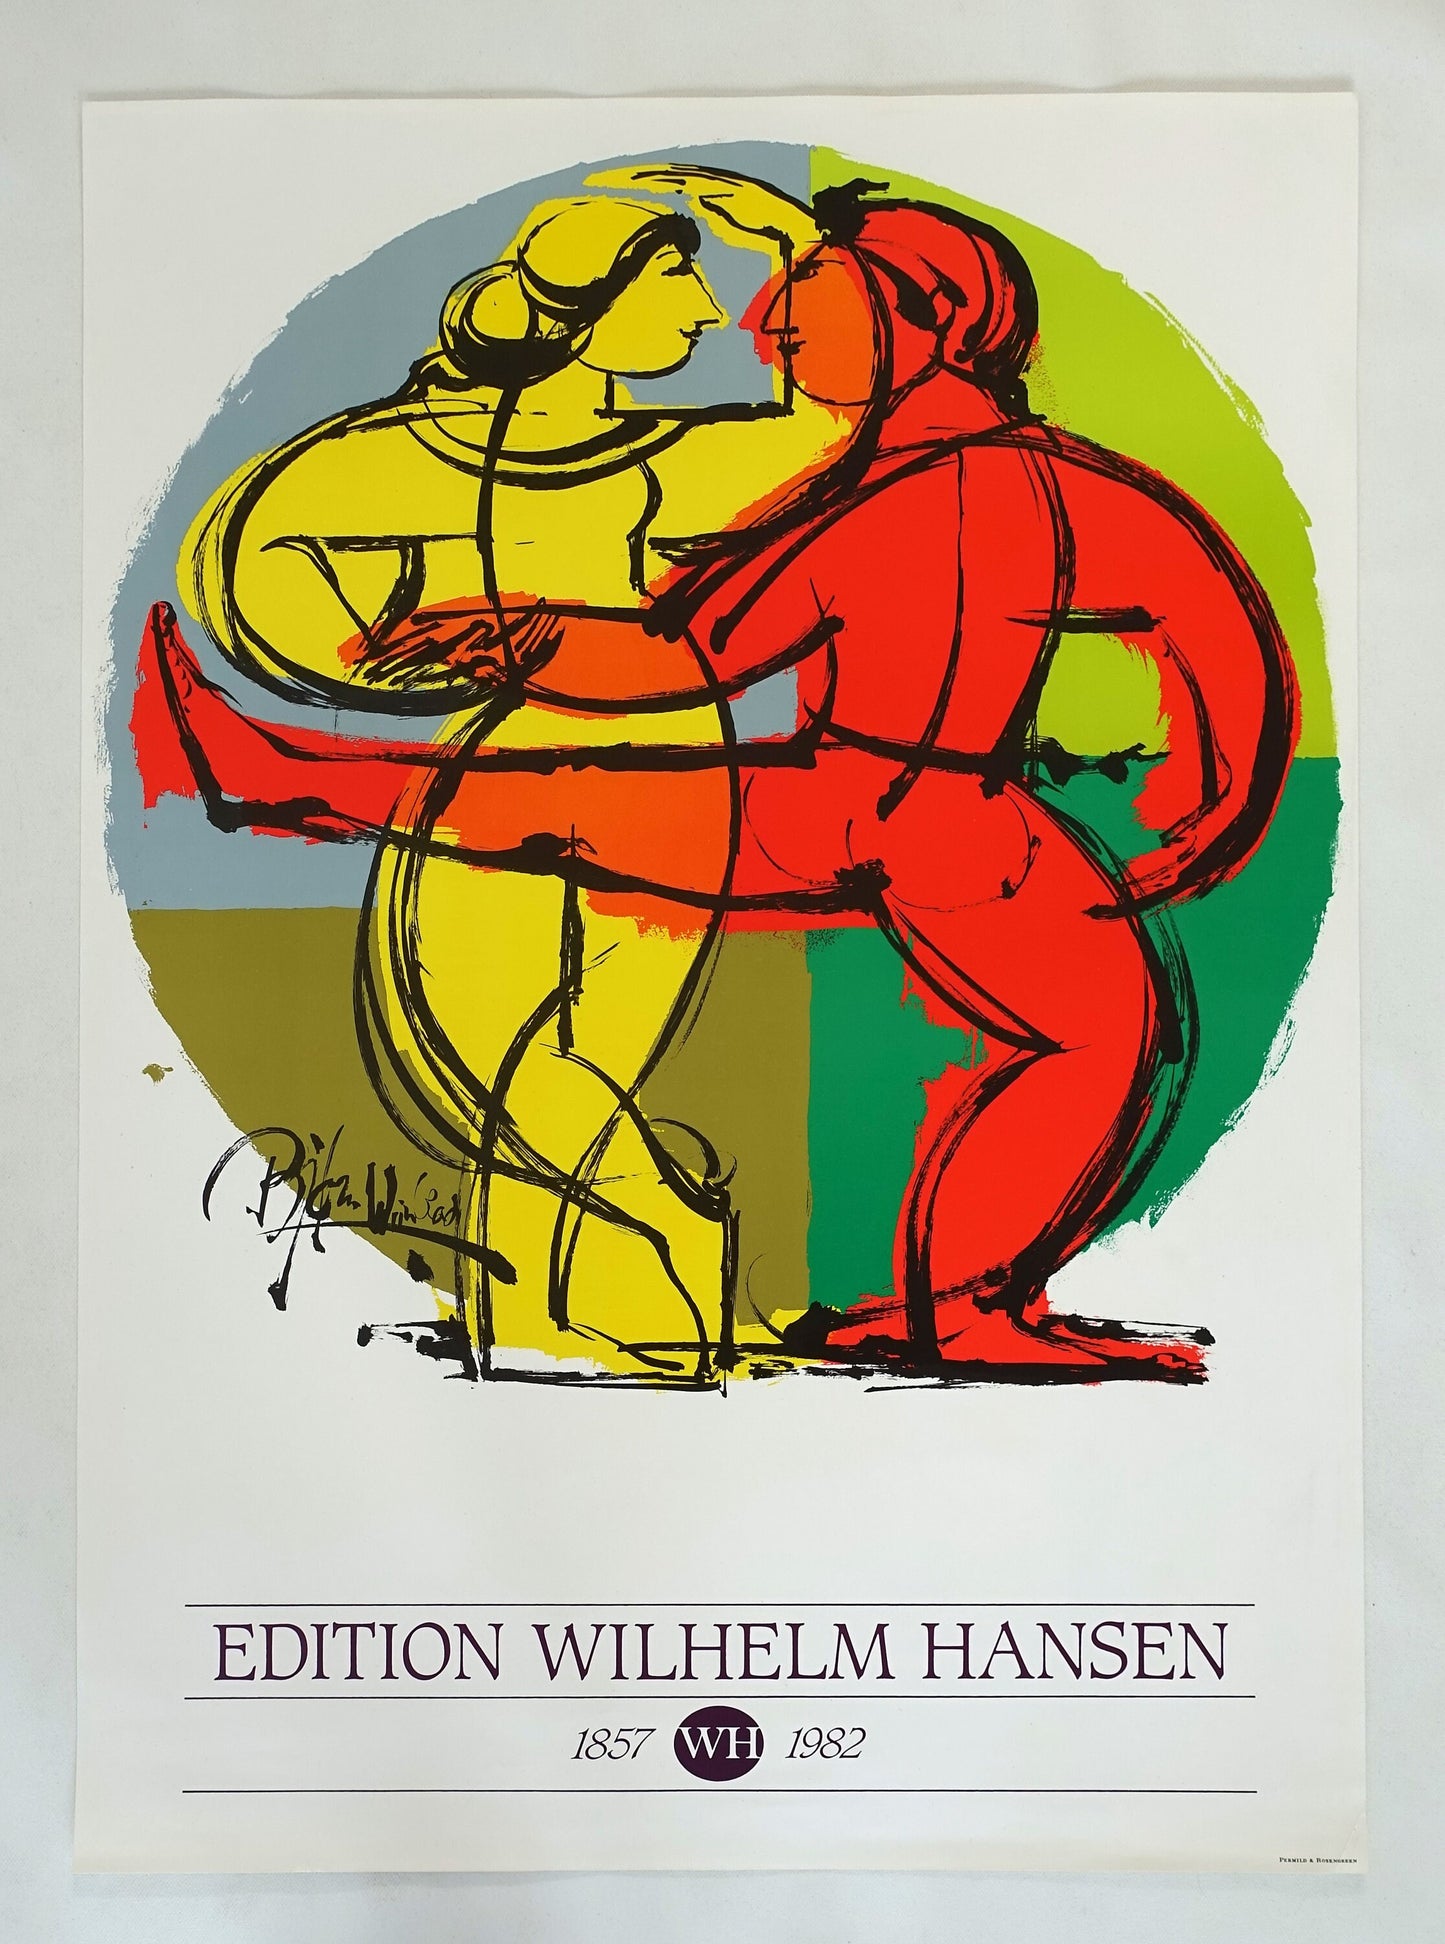 1982 Wiinblad "Edition Wilhelm Hansen" - Original Vintage Poster